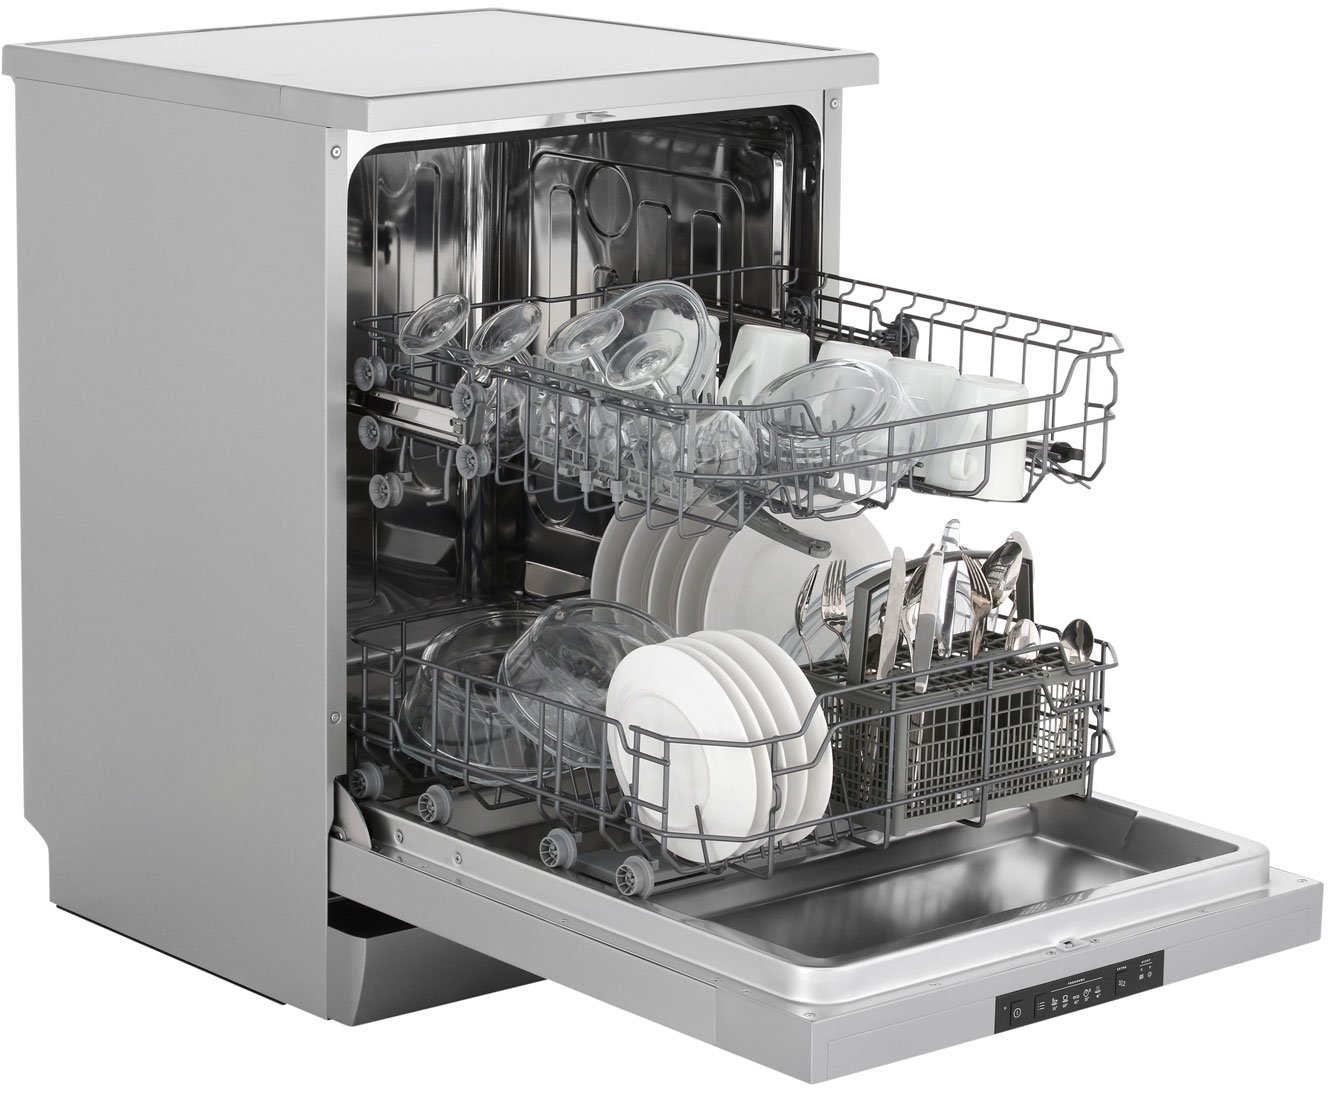 Посудомоечная горение отзывы. Посудомоечная машина Gorenje gs62040s. Посудомоечная машина Gorenje gs53010w. Посудомоечная машина Gorenje gs62010s. Посудомоечная машина Gorenje gs52040s.